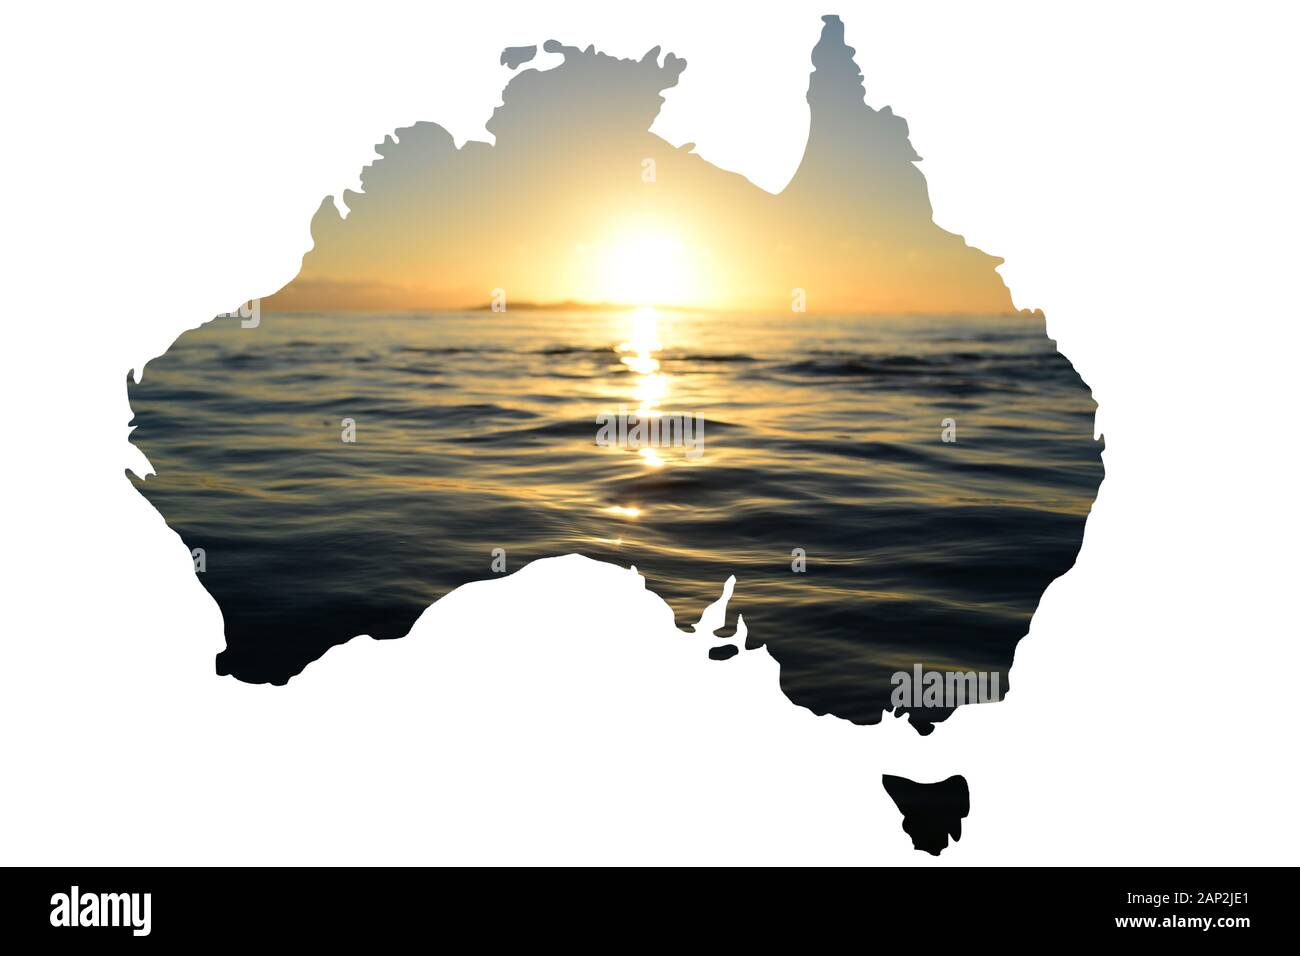 Ein warmer Sonnenaufgang auf dem Ozean in Victoria, einem Bundesstaat Australiens, der in eine Landkarte des Landes einging Stockfoto